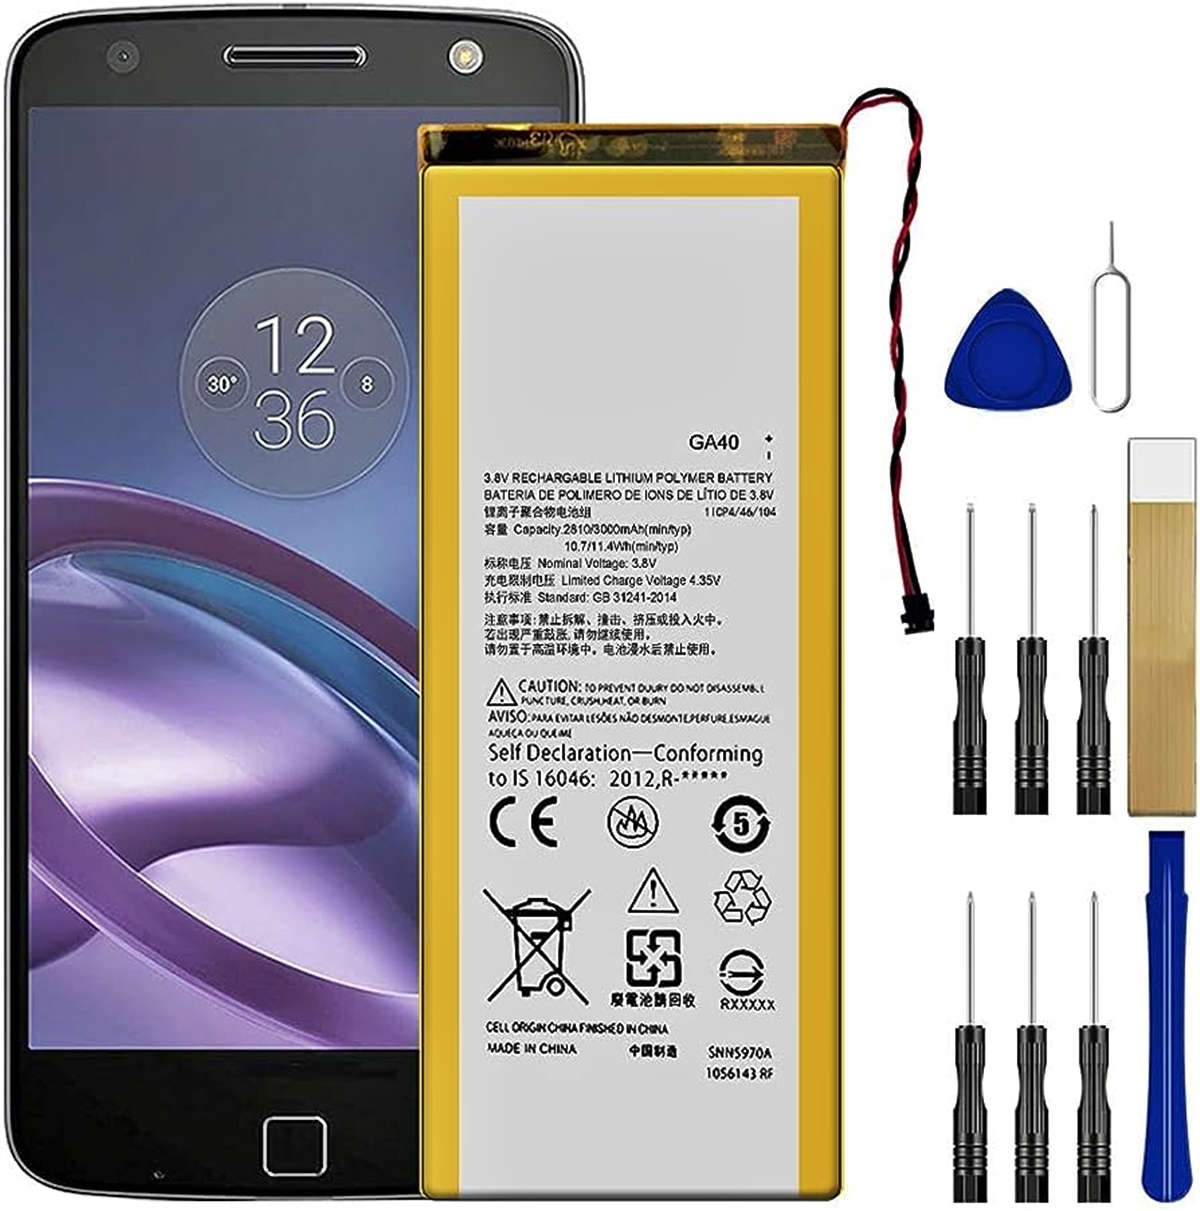  DDONG Battery GK40 Replacement for Motorola E4 XT1768, G4 Play  XT1607, G5 XT1601, E5 Play XT1921-1 XT1921-3 XT1921-5 XT1921-6 XT1921-7, E5  Go XT1921-8, E5 Cruise XT1921-2 Battery Replacement : Cell Phones